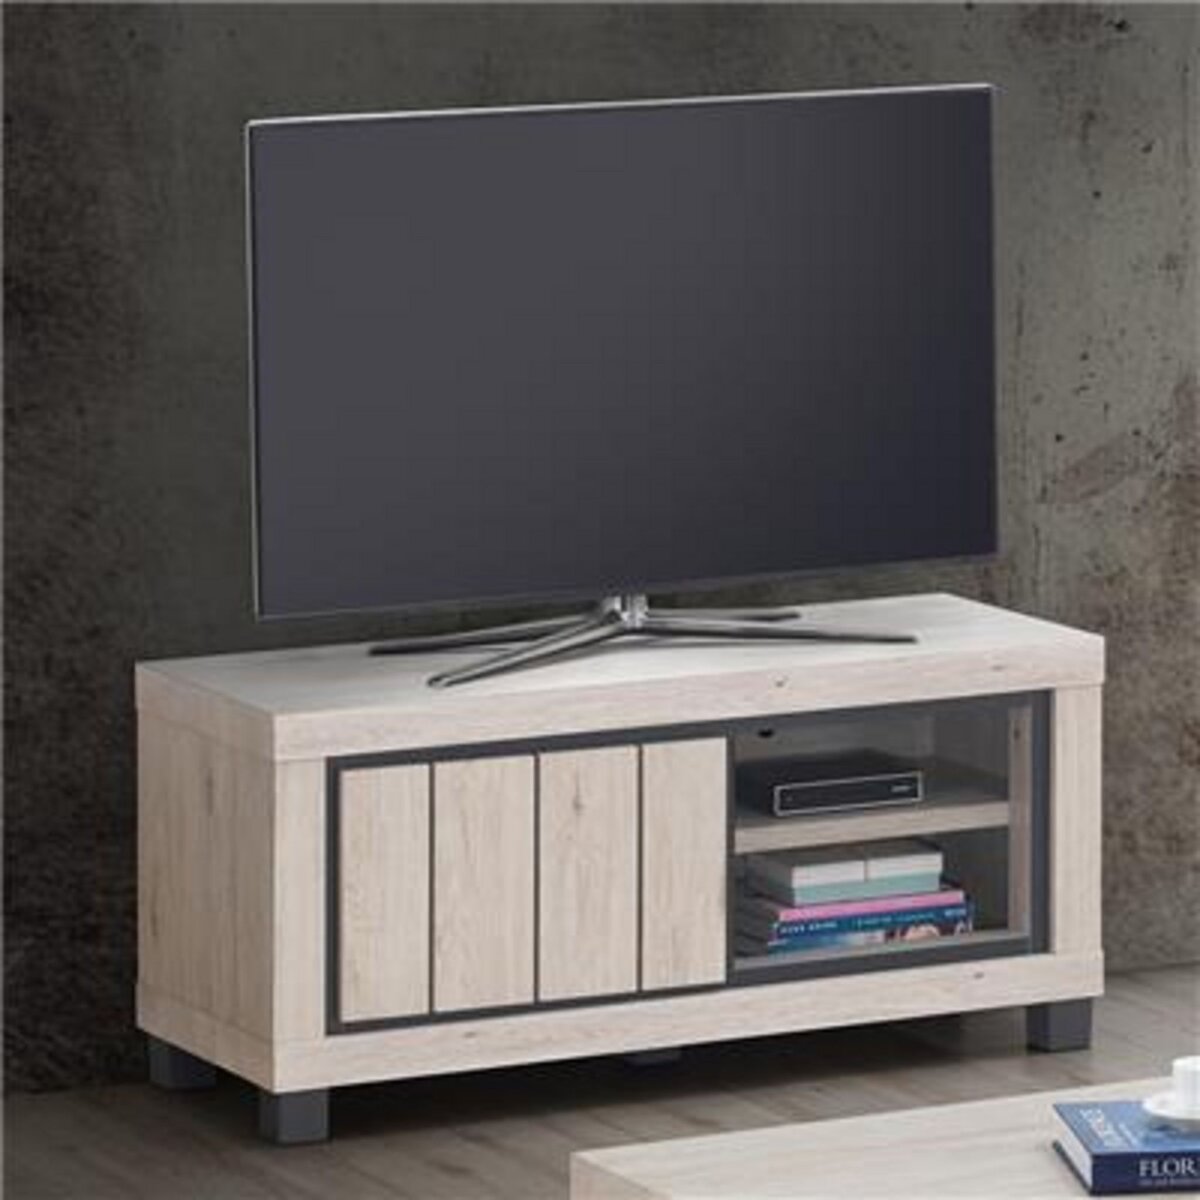 KASALINEA Meuble TV 120 cm couleur bois naturel EUPHORIA-L 120 x P 45 x H 55 cm- Beige